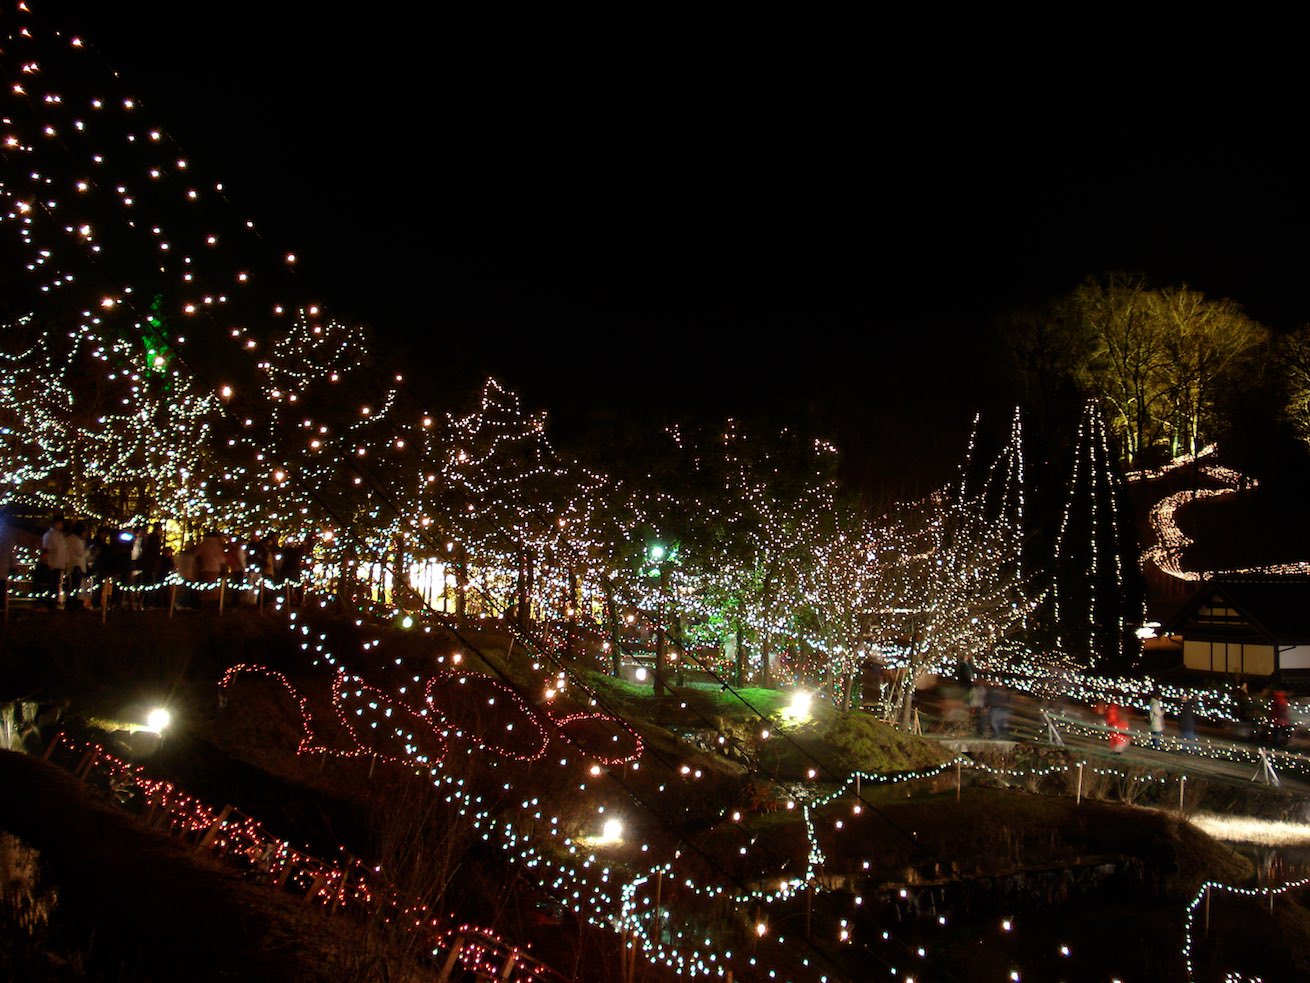 Bihoku Park Illumination 2006